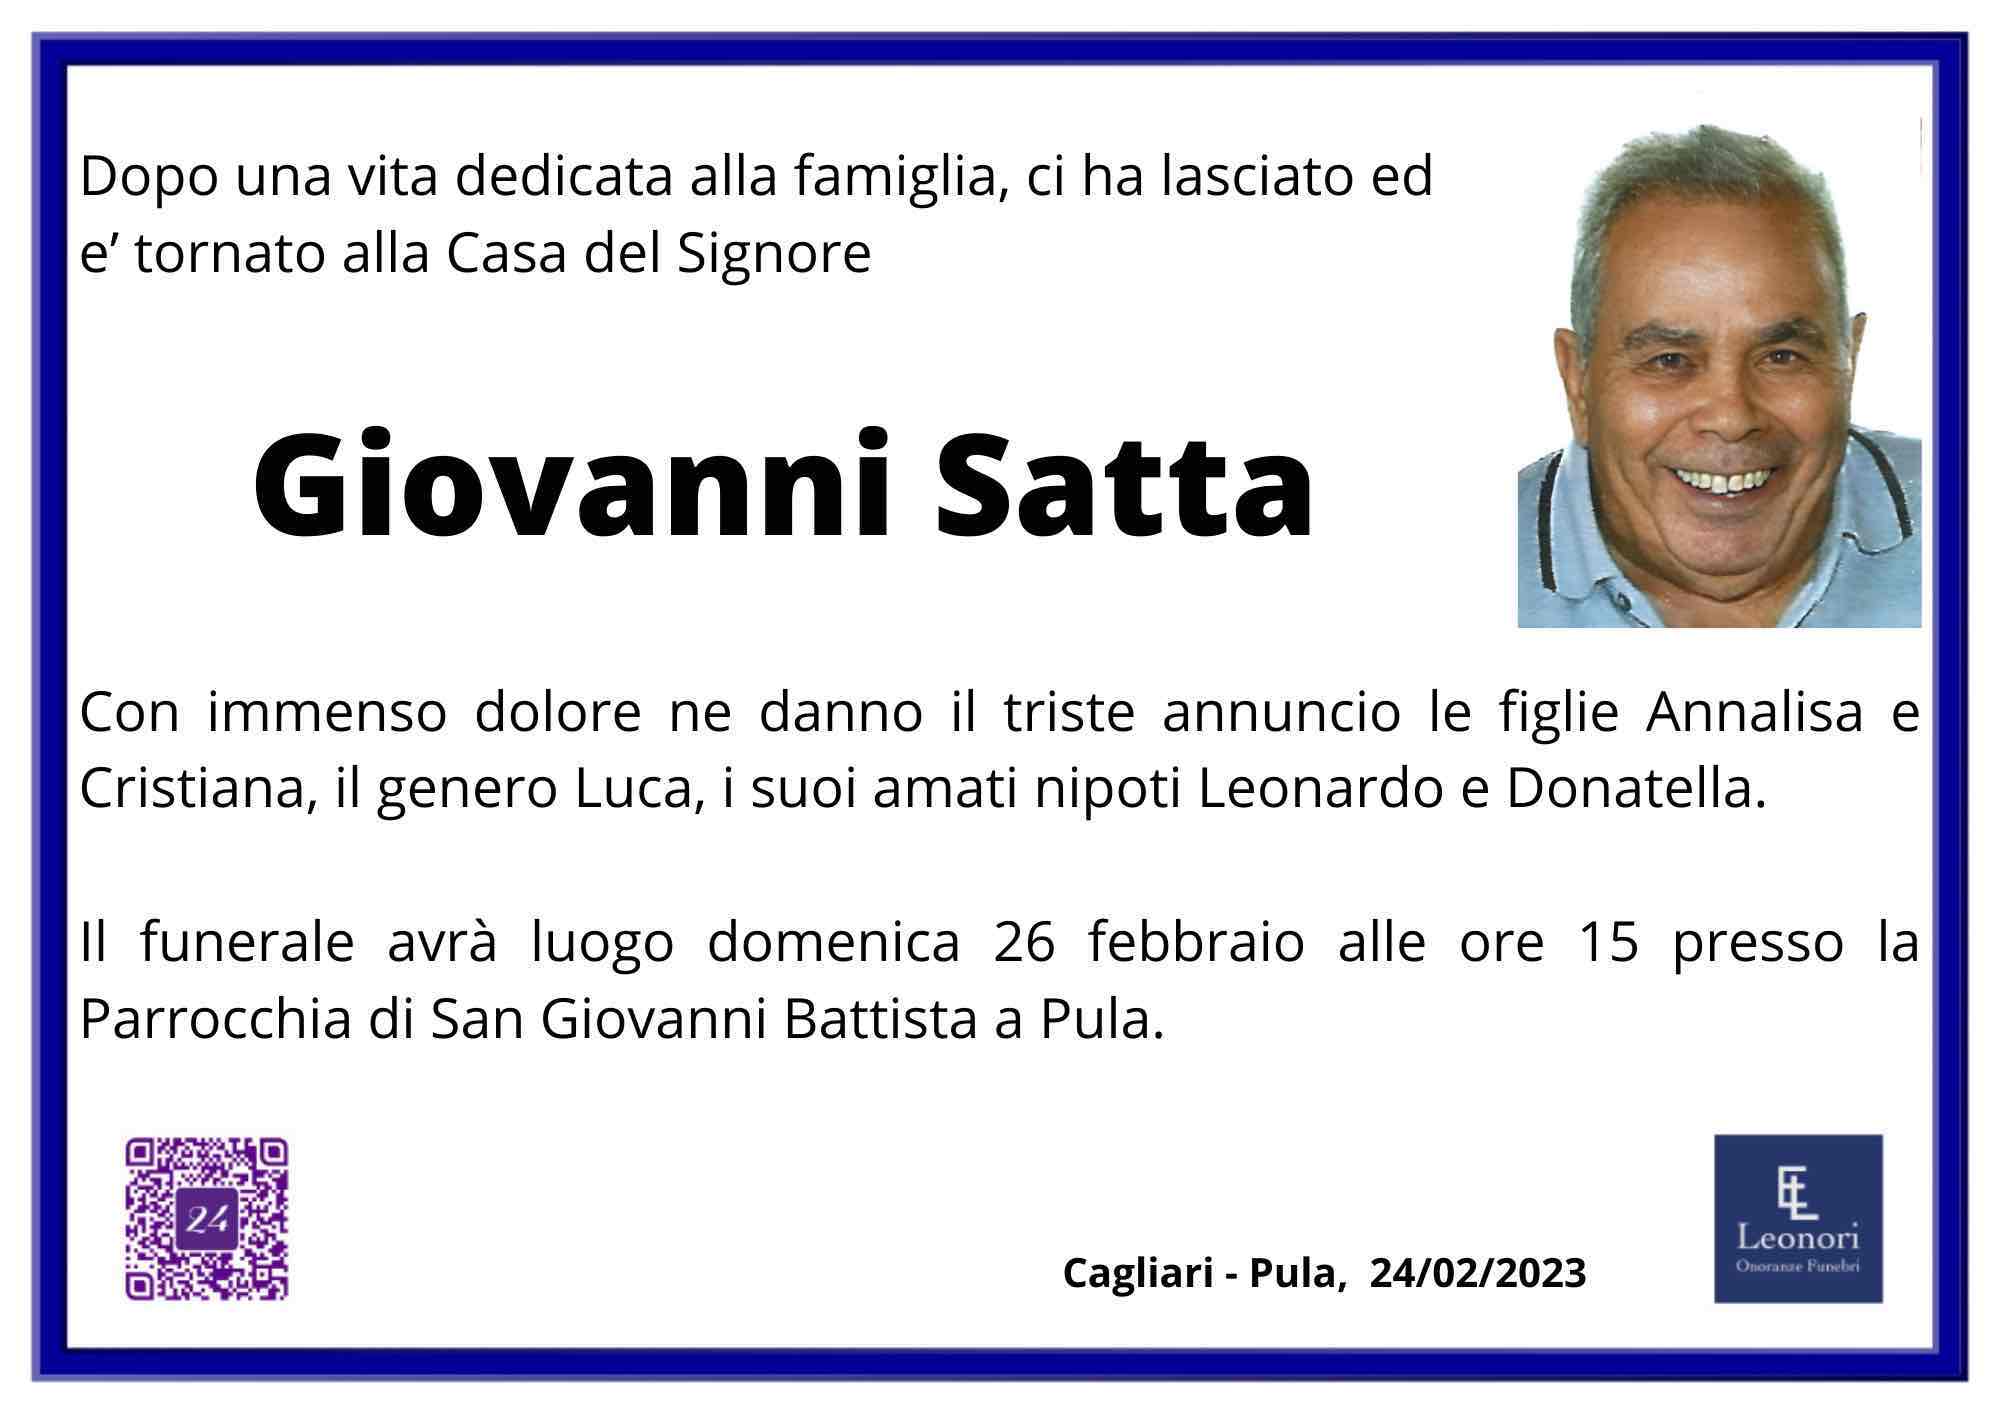 Giovanni Satta